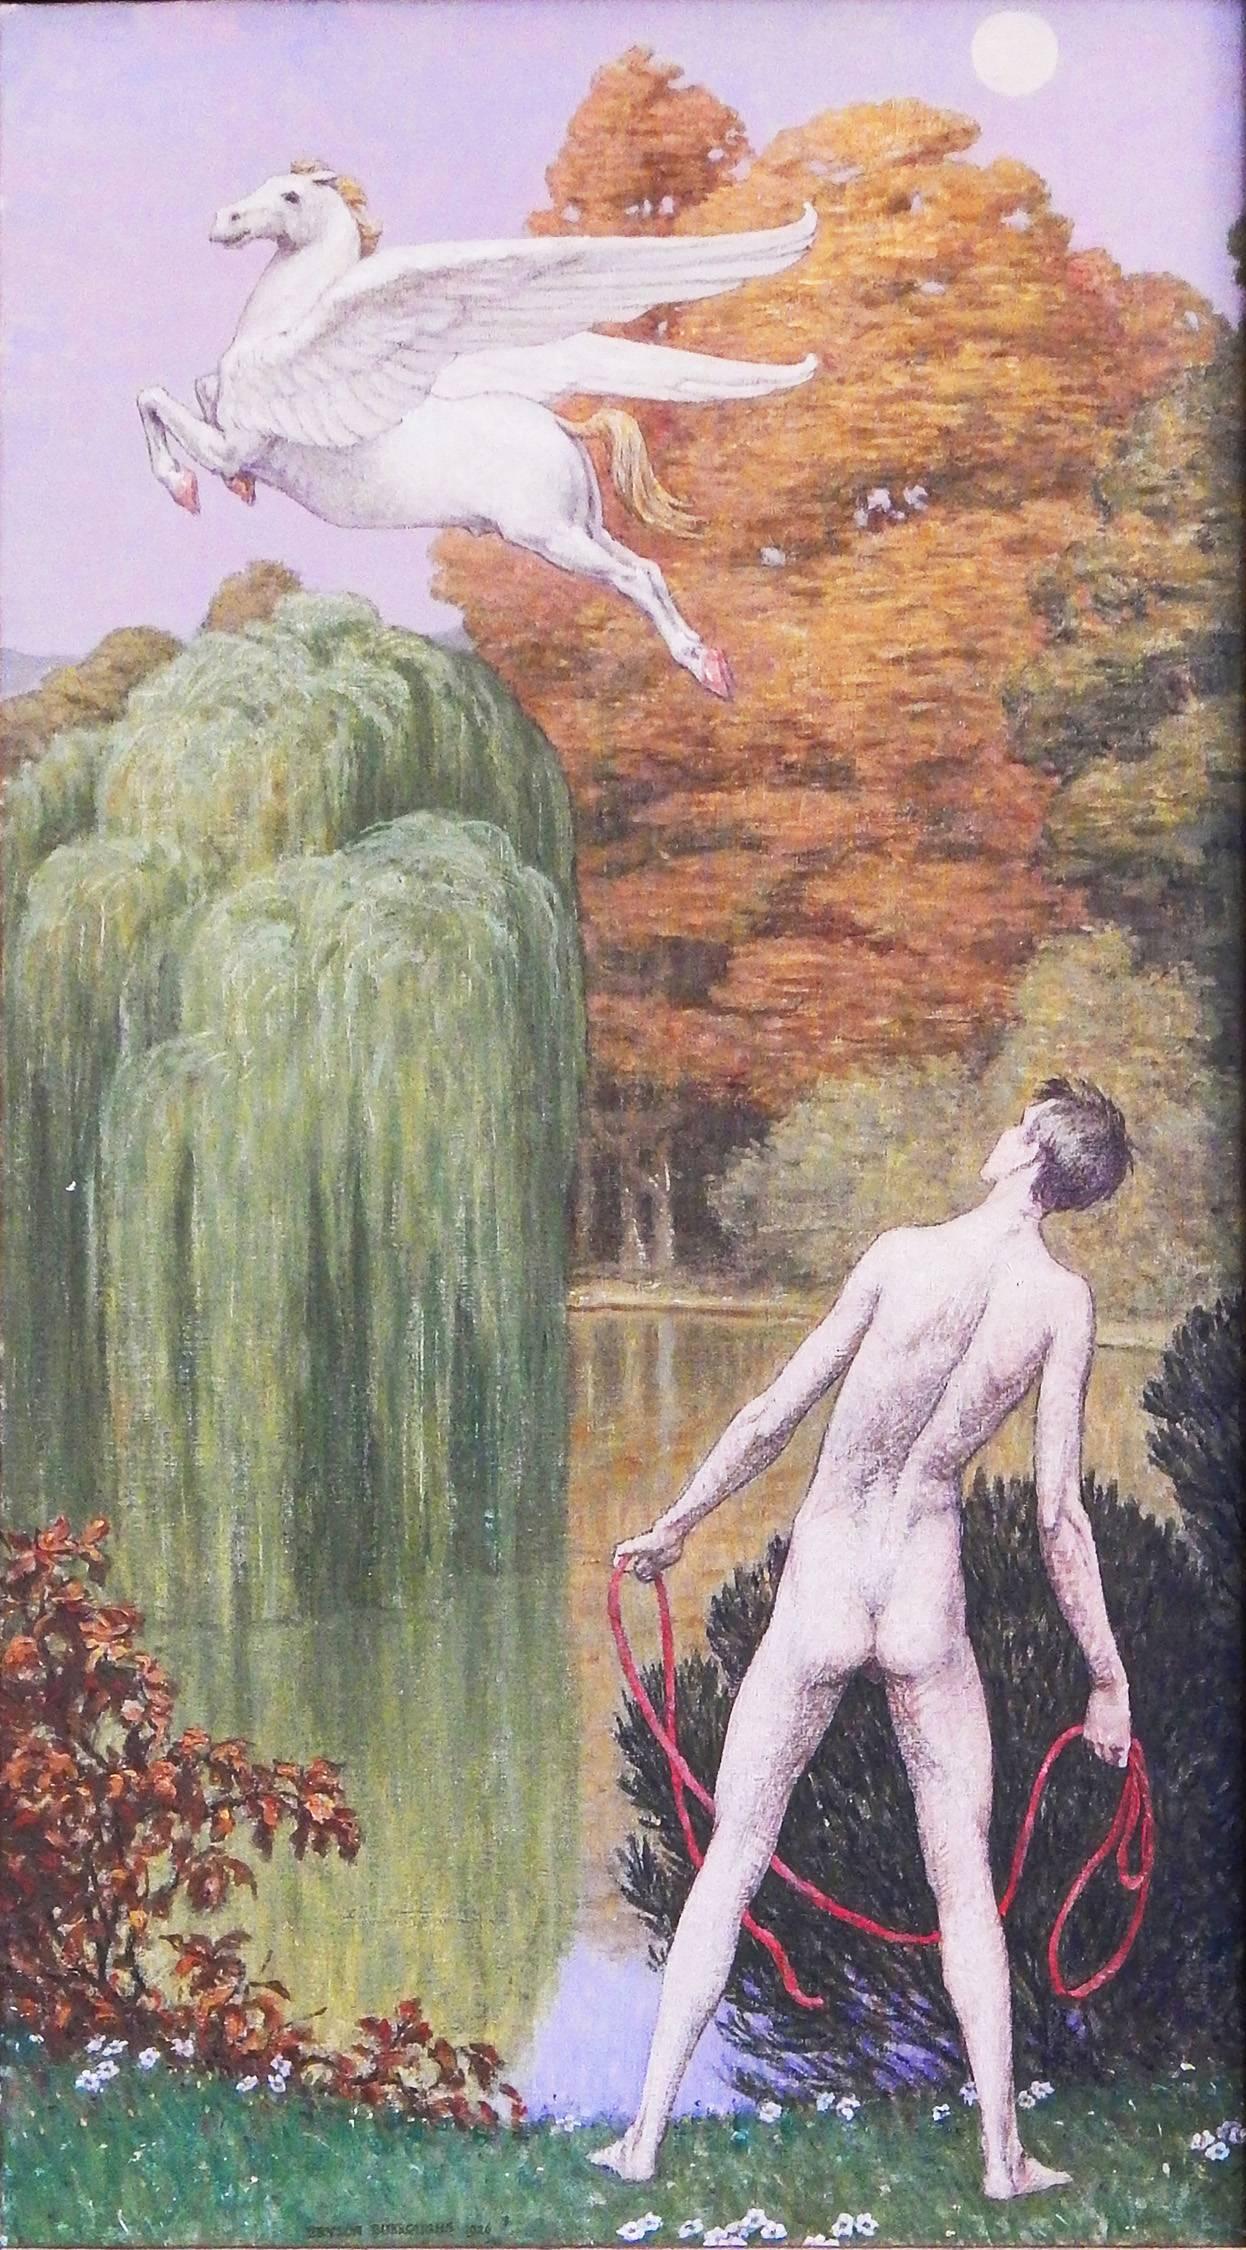 Cette scène remarquable, qui représente le moment où Bellérophon s'apprête à attraper au lasso la figure volante de Pégase après que la créature s'est arrêtée pour boire en bas, a été peinte en 1926 par Bryson Burroughs, l'un des grands classiques